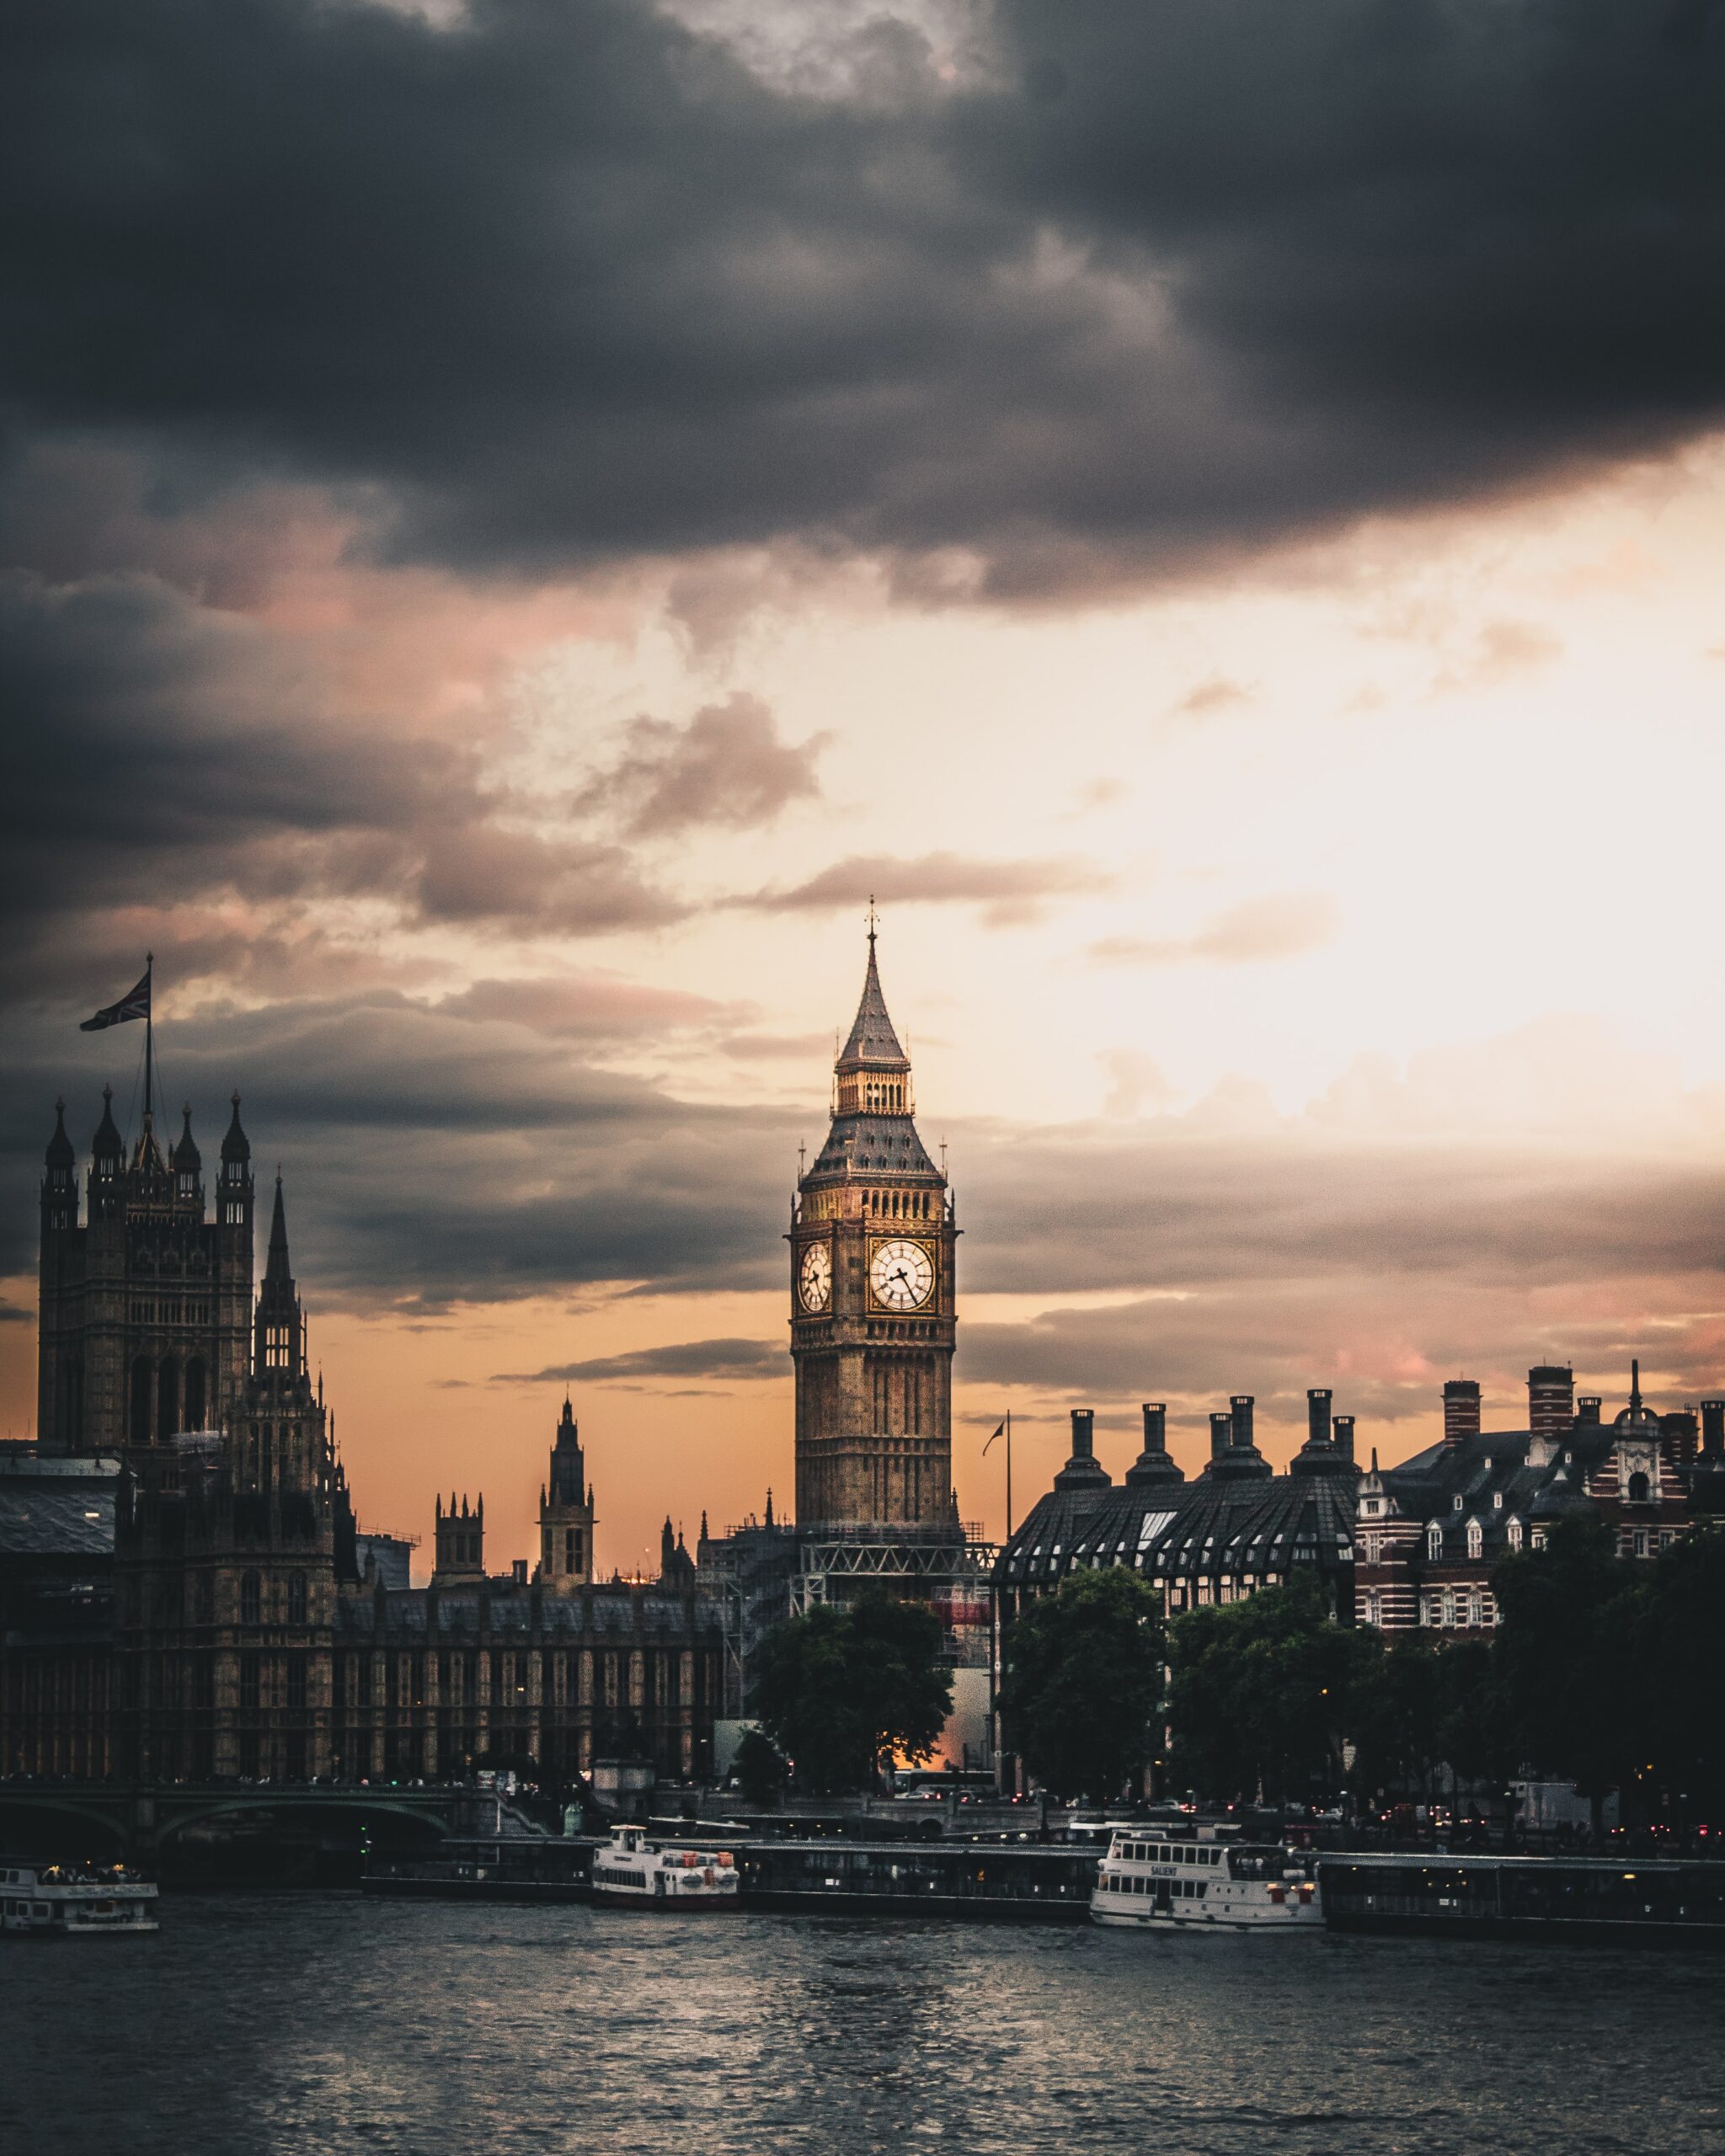 luke-stackpoole-London UK clock tower at dusk-unsplash